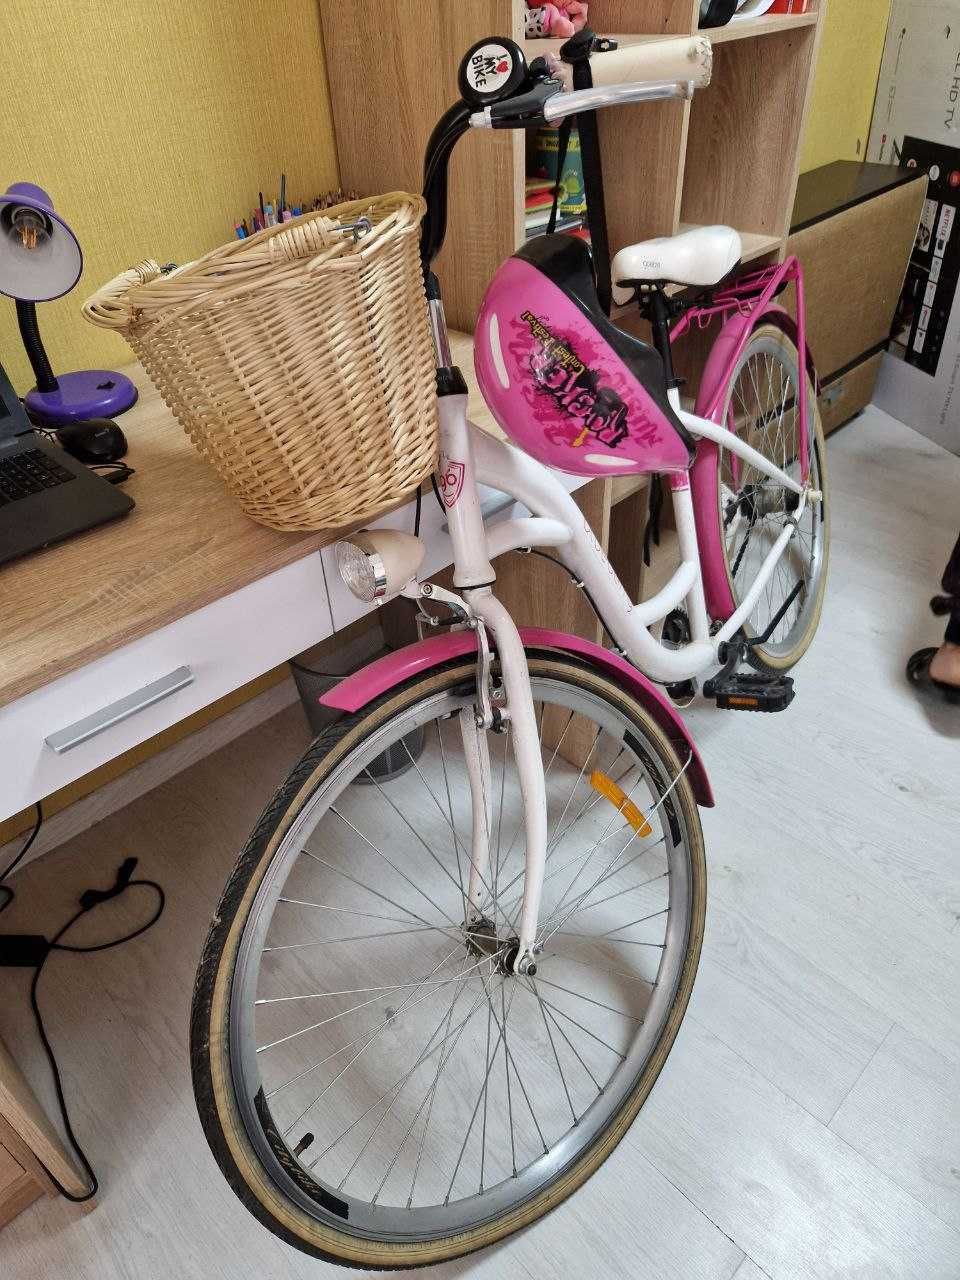 Велосипед Goetze Blueberry 28 3-п бело-розовый